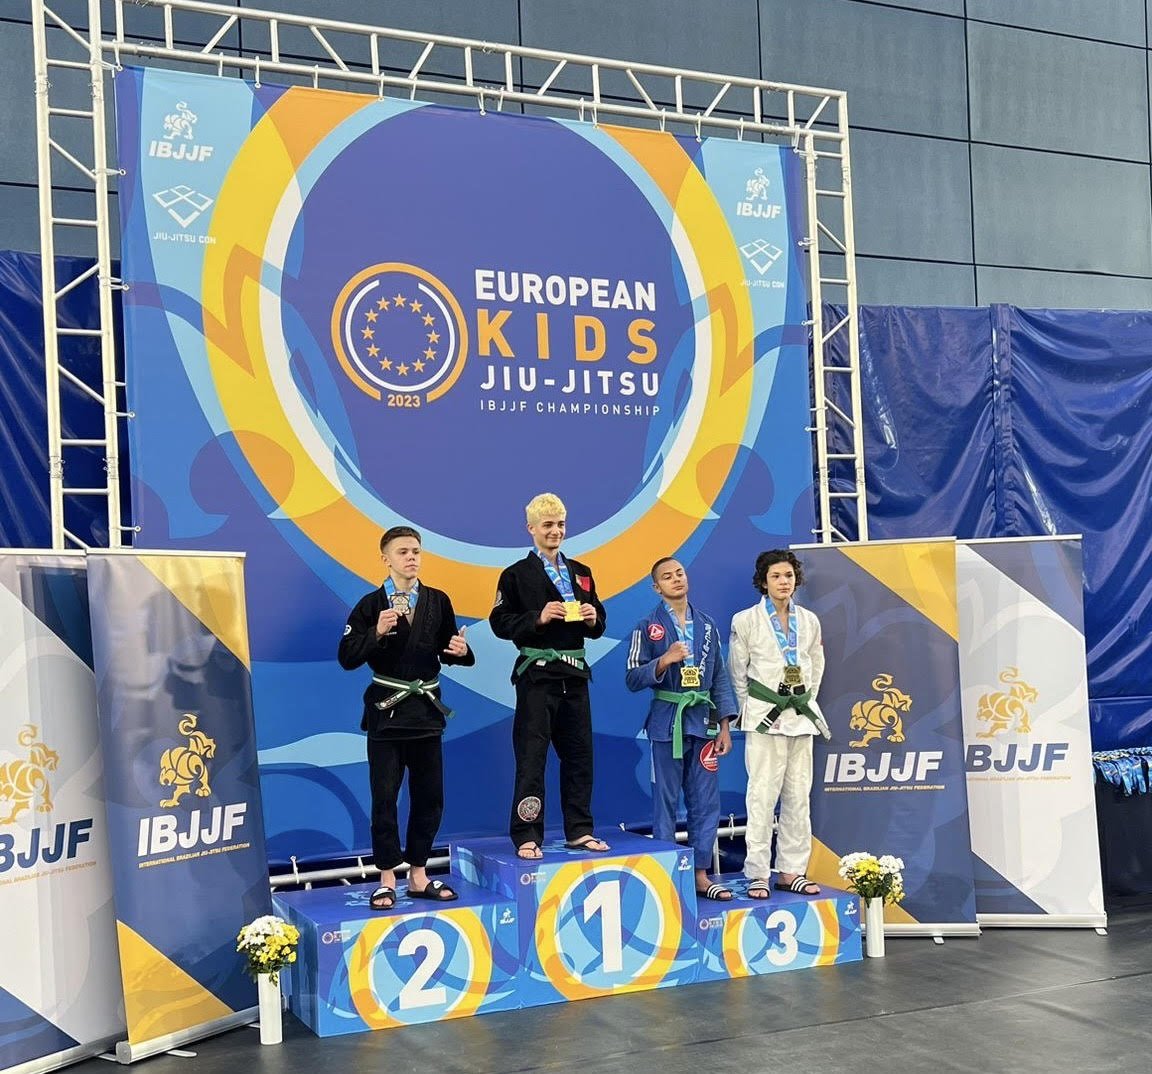 Campeonato Europeu de Jiu-jítsu 2023 kids